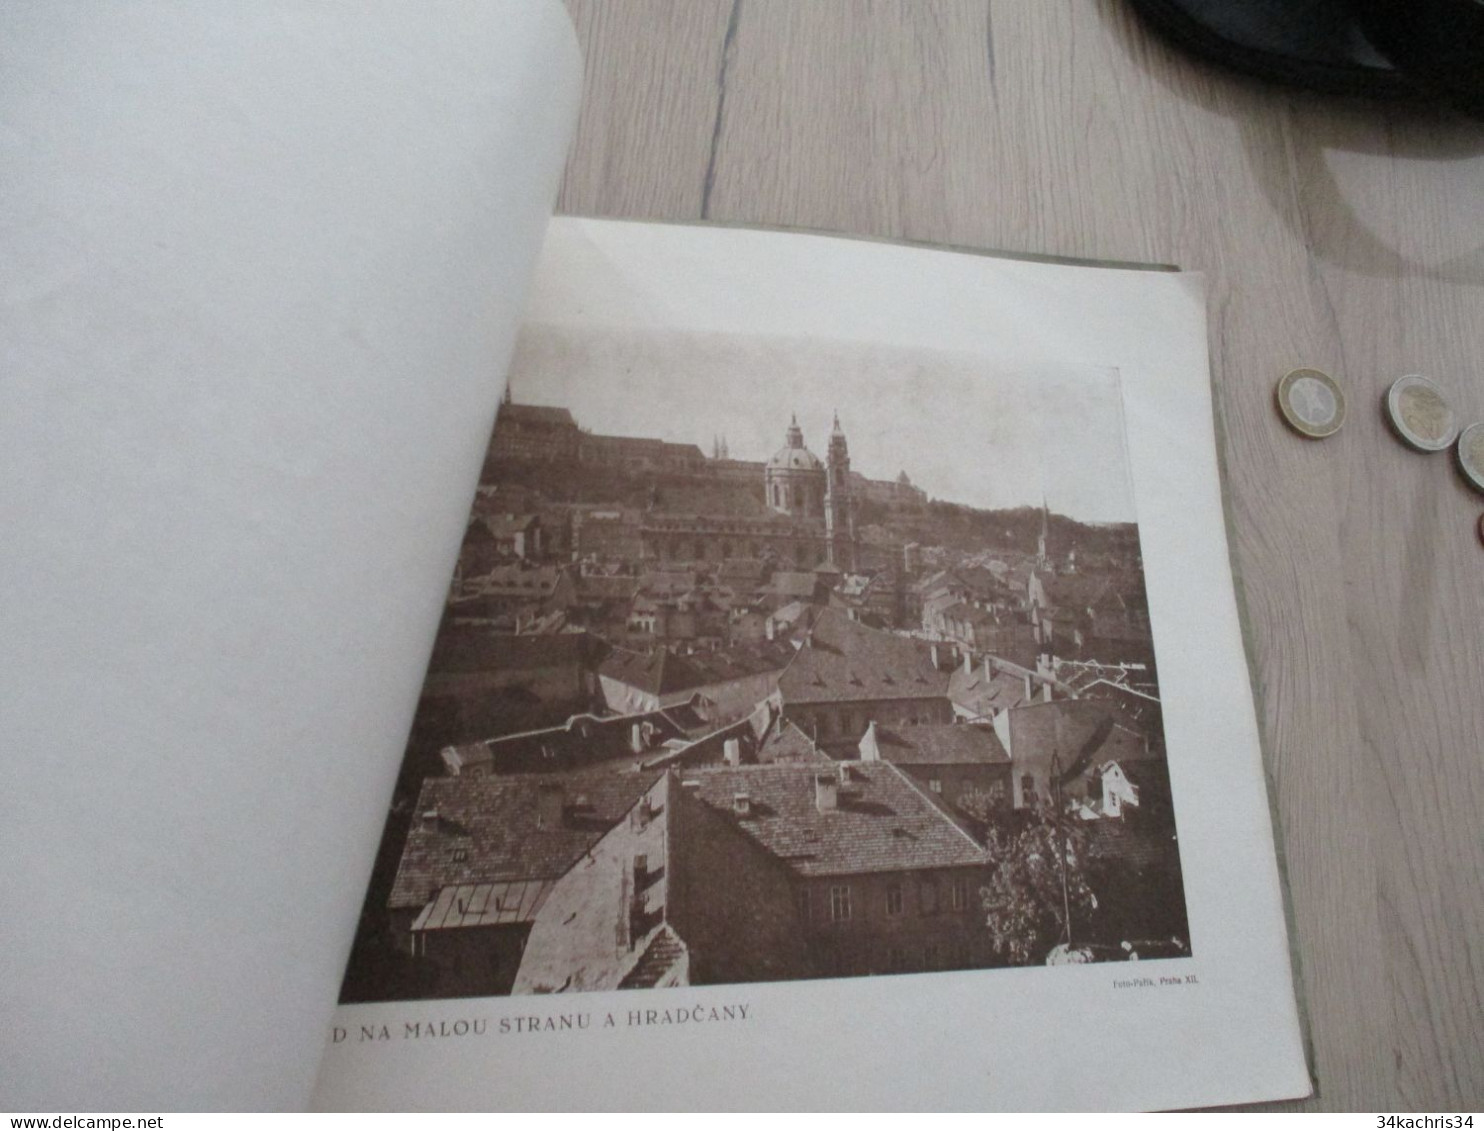 N7 Almanach Grand format 1920 Praha Prague Tchéquie Czech 39 pages de photos pub et texte